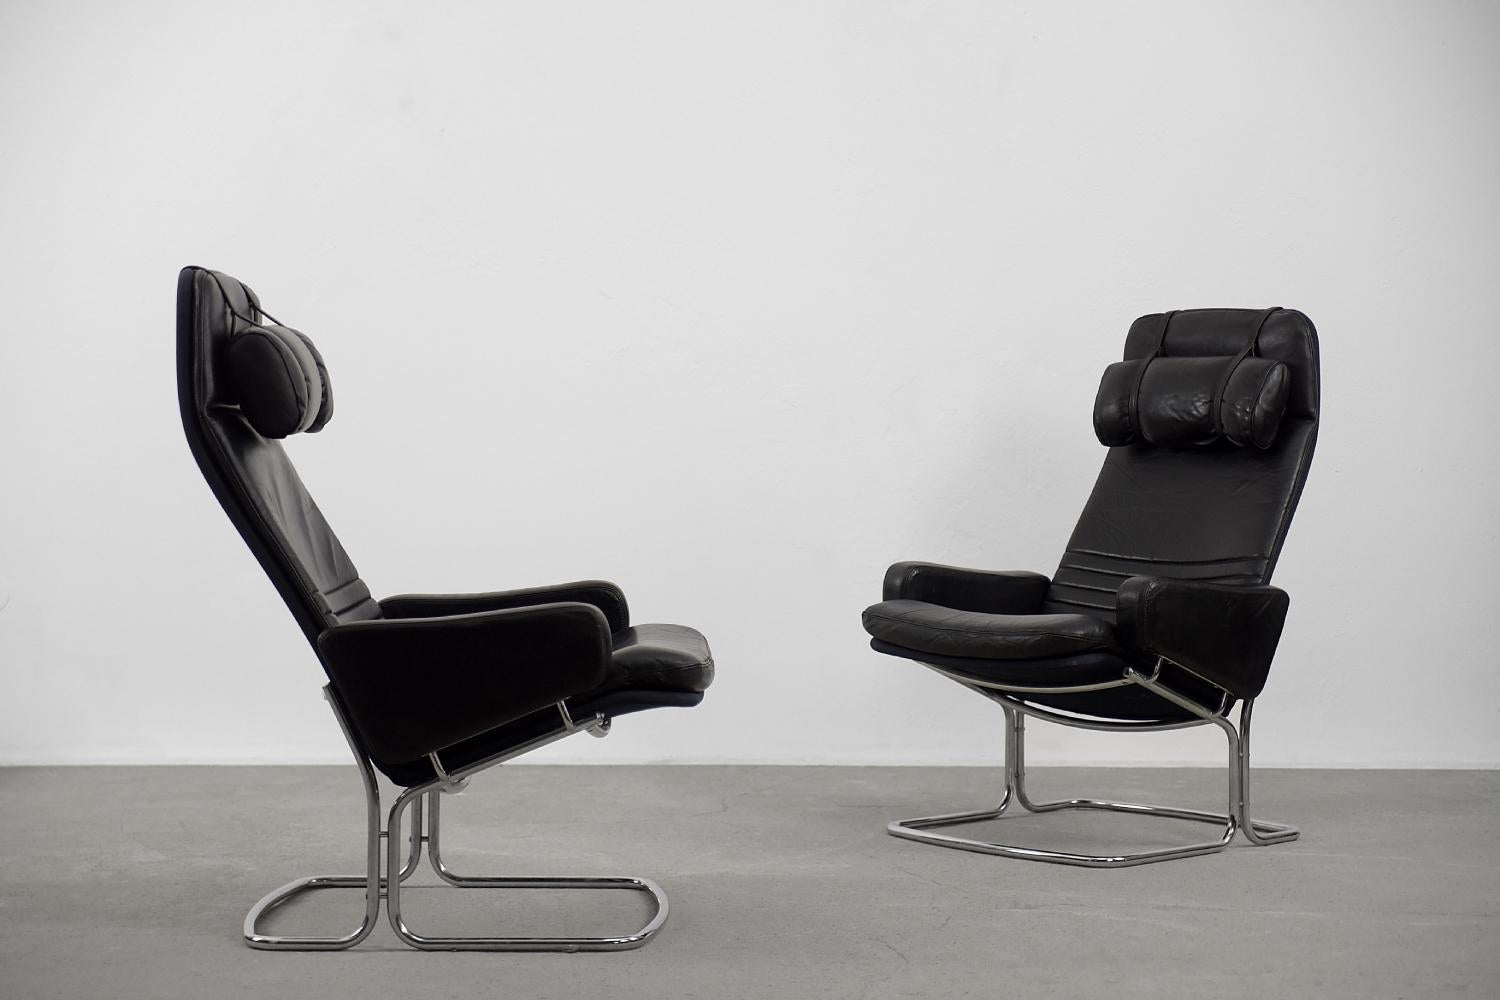 Cet ensemble de fauteuils rares a été fabriqué par Ire Möbel AB à Skillingaryd, en Suède, dans les années 1970. Les sièges étaient recouverts de cuir naturel noir avec des surpiqûres longitudinales. Ils sont dotés d'un siège souple et confortable et